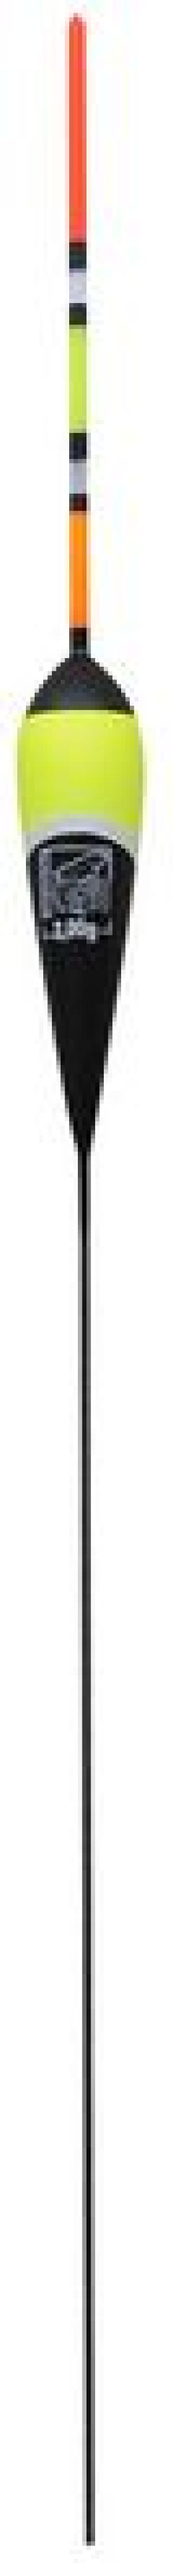 Robinson Spławik multicolor 0.75g, 1 szt. (4S-M03-007) 1